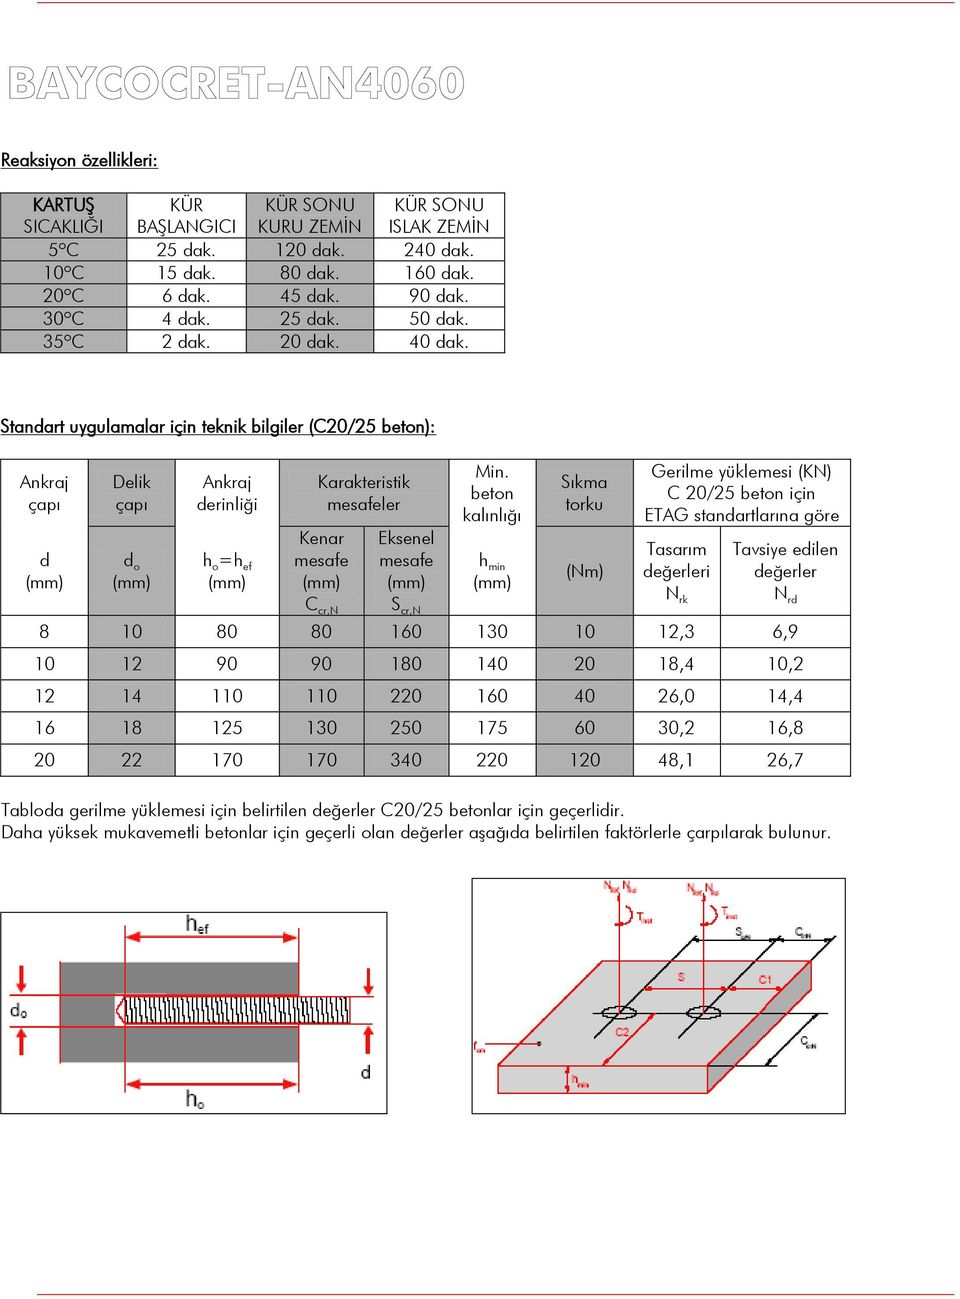 beton kalınlığı Sıkma torku Gerilme yüklemesi (KN) C 20/25 beton için ETAG standartlarına göre Kenar Eksenel Tasarım d o h o =h ef mesafe mesafe h min (Nm) değerleri (mm) (mm) (mm) (mm) (mm) N C cr,n